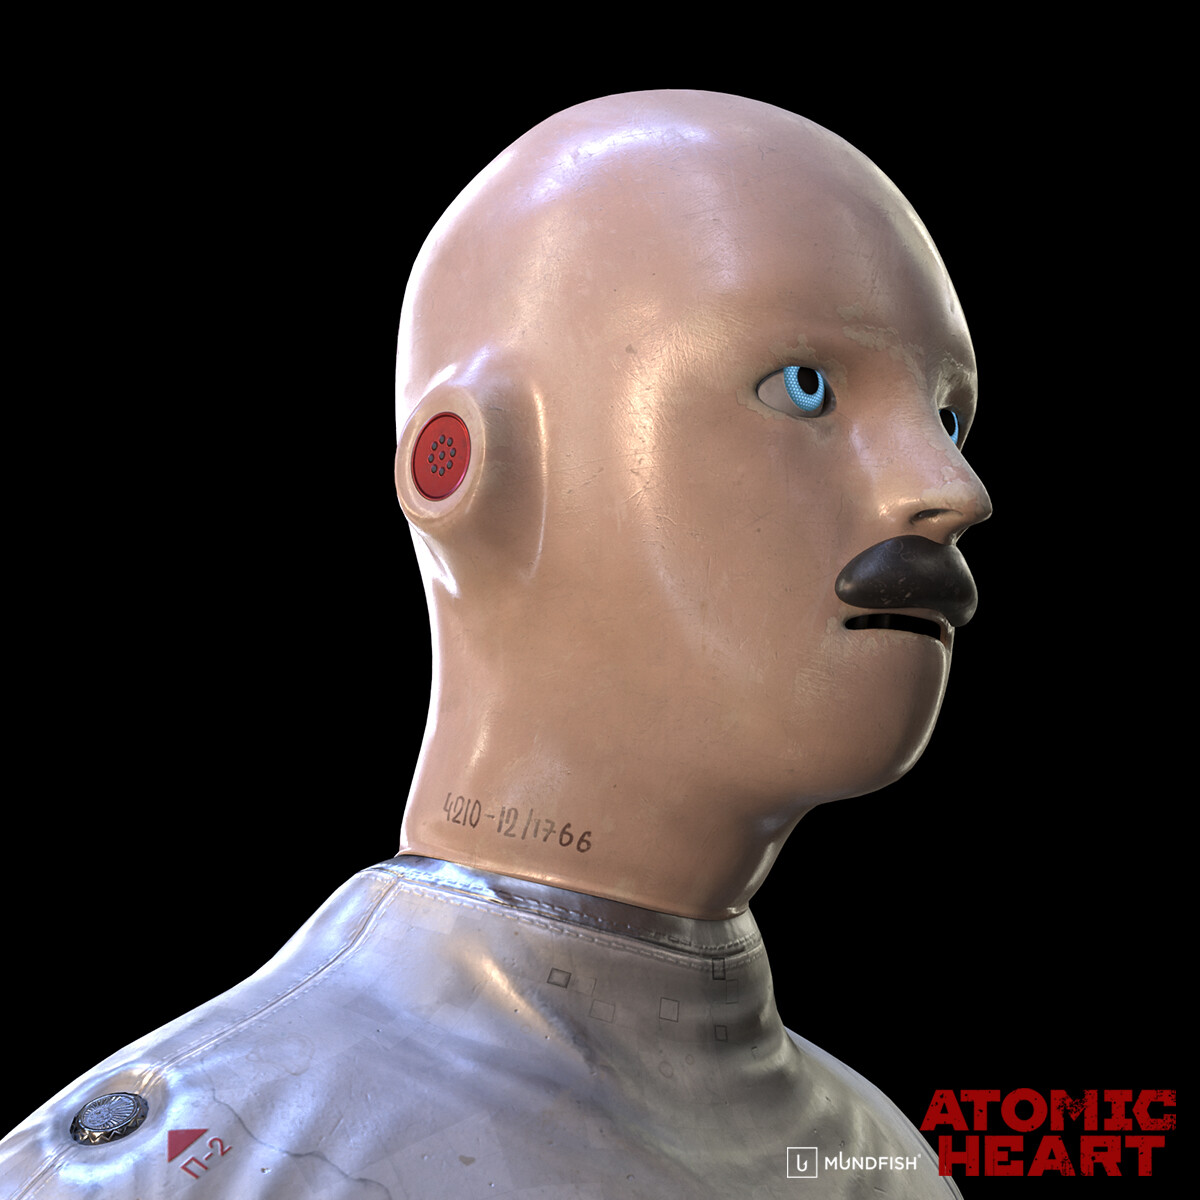 Atomic Heart VOV-A6 Robot Articulated Bust Face 3D model 3D